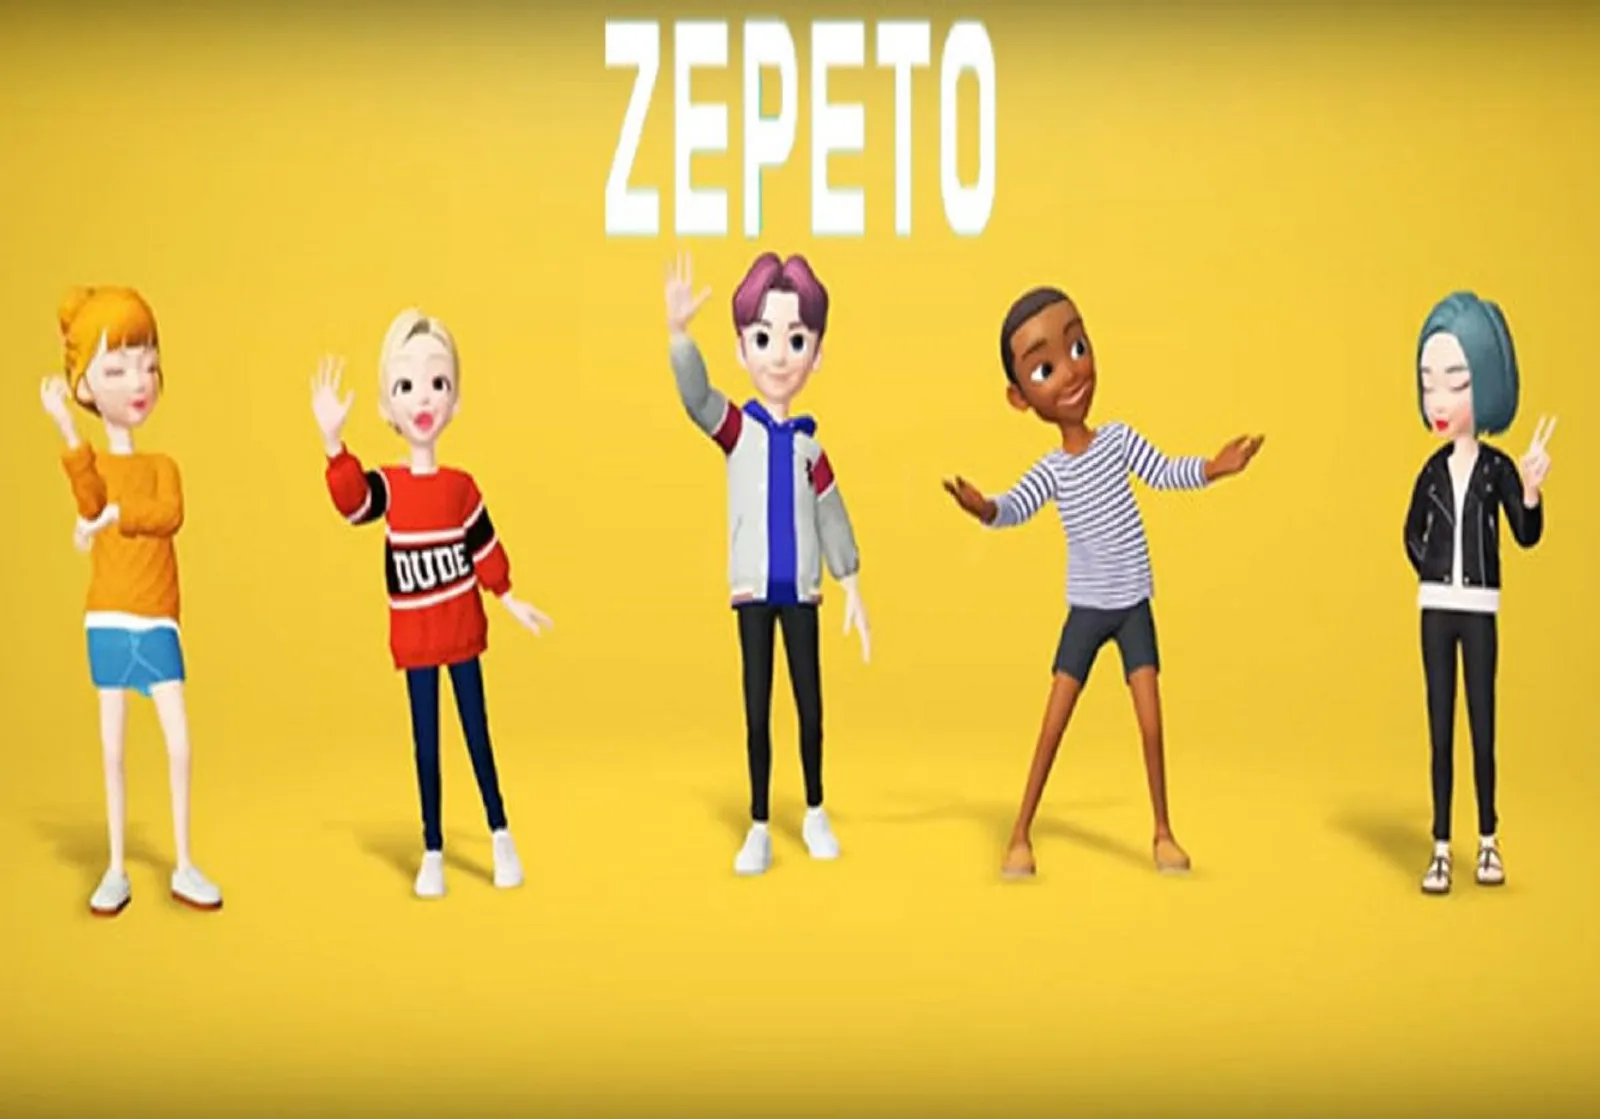 Dikabarkan Bisa Lacak Pengguna, Ini 5 Fakta Aplikasi Zepeto  